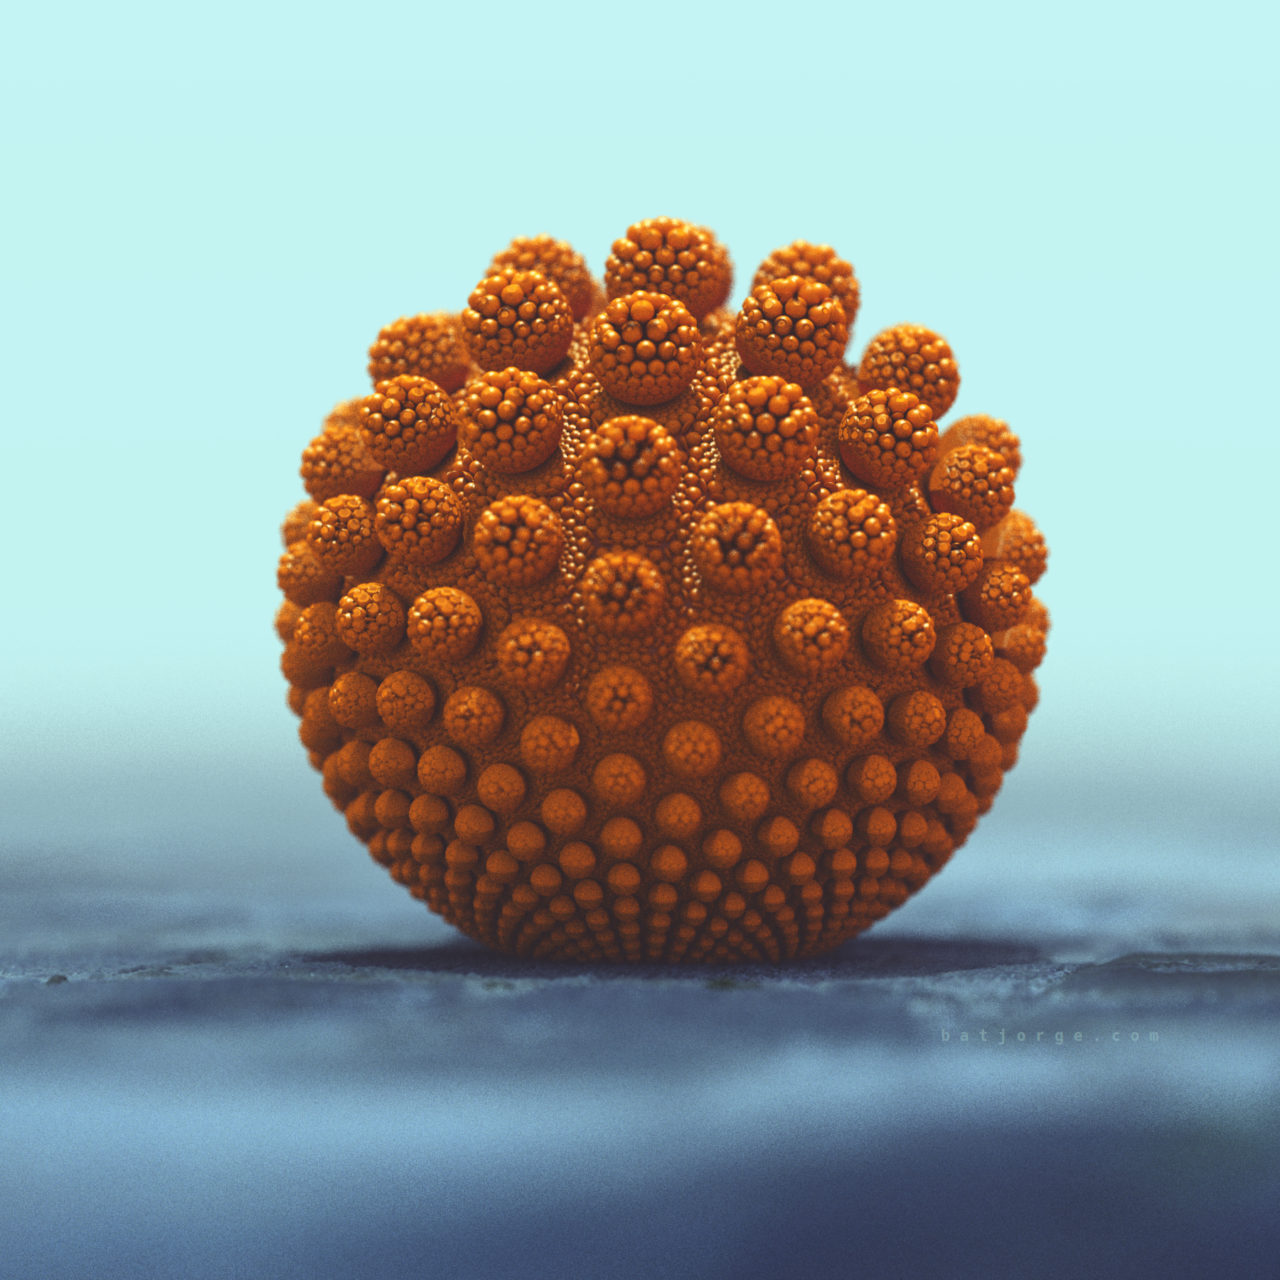 3D fractal orb. mandelbulber.